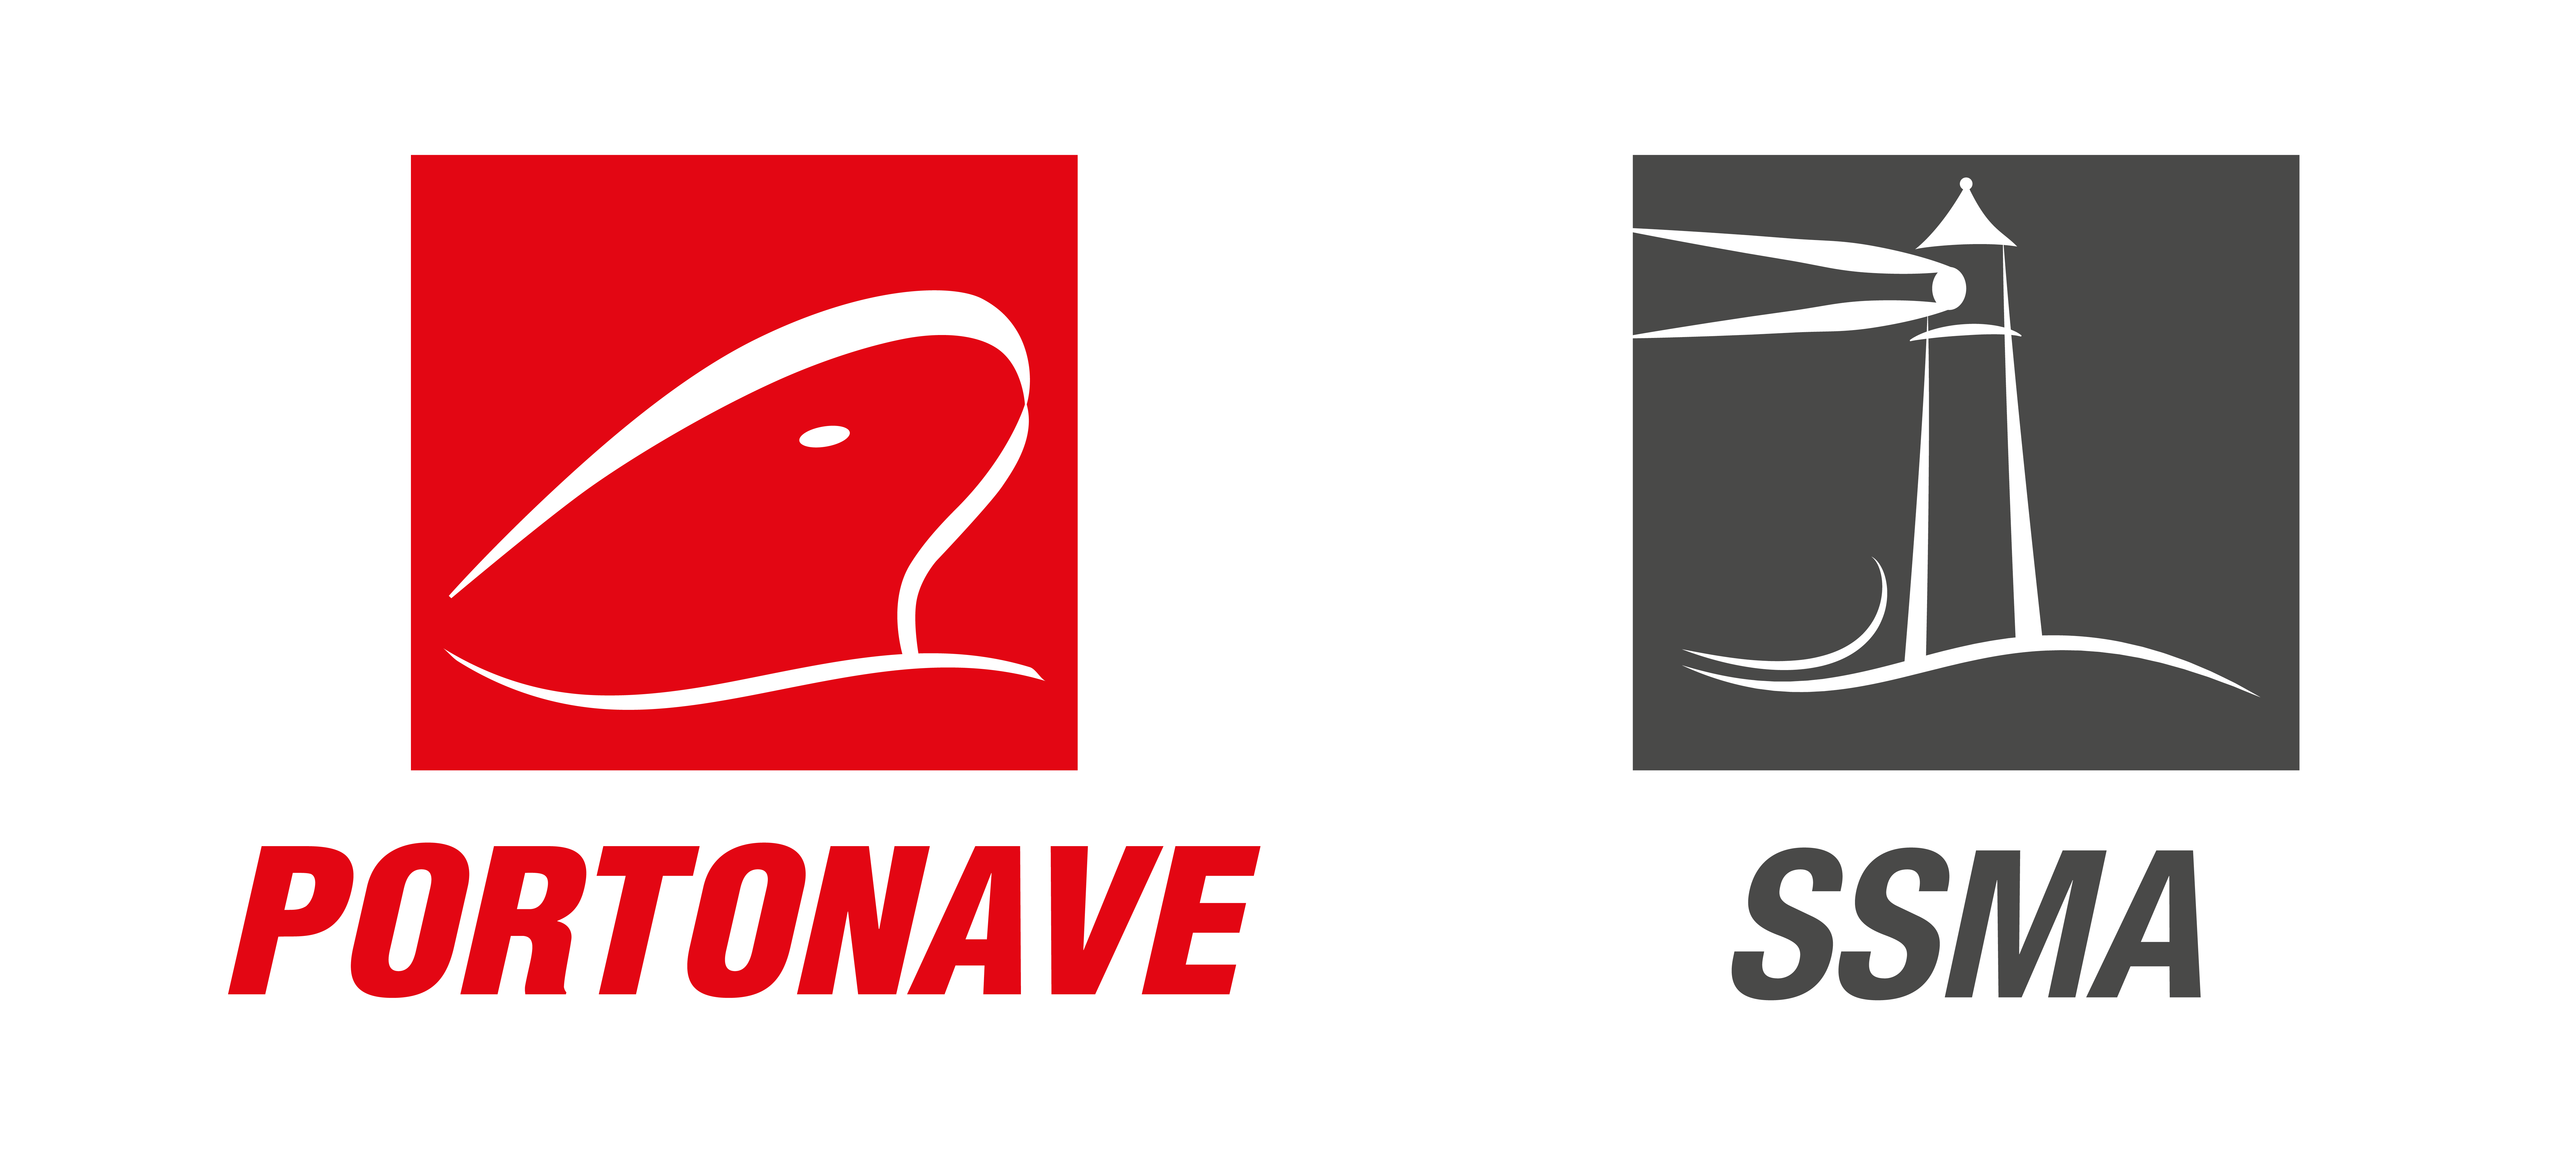 Logotipo Programa de Segurança – PORTONAVE E SSMA